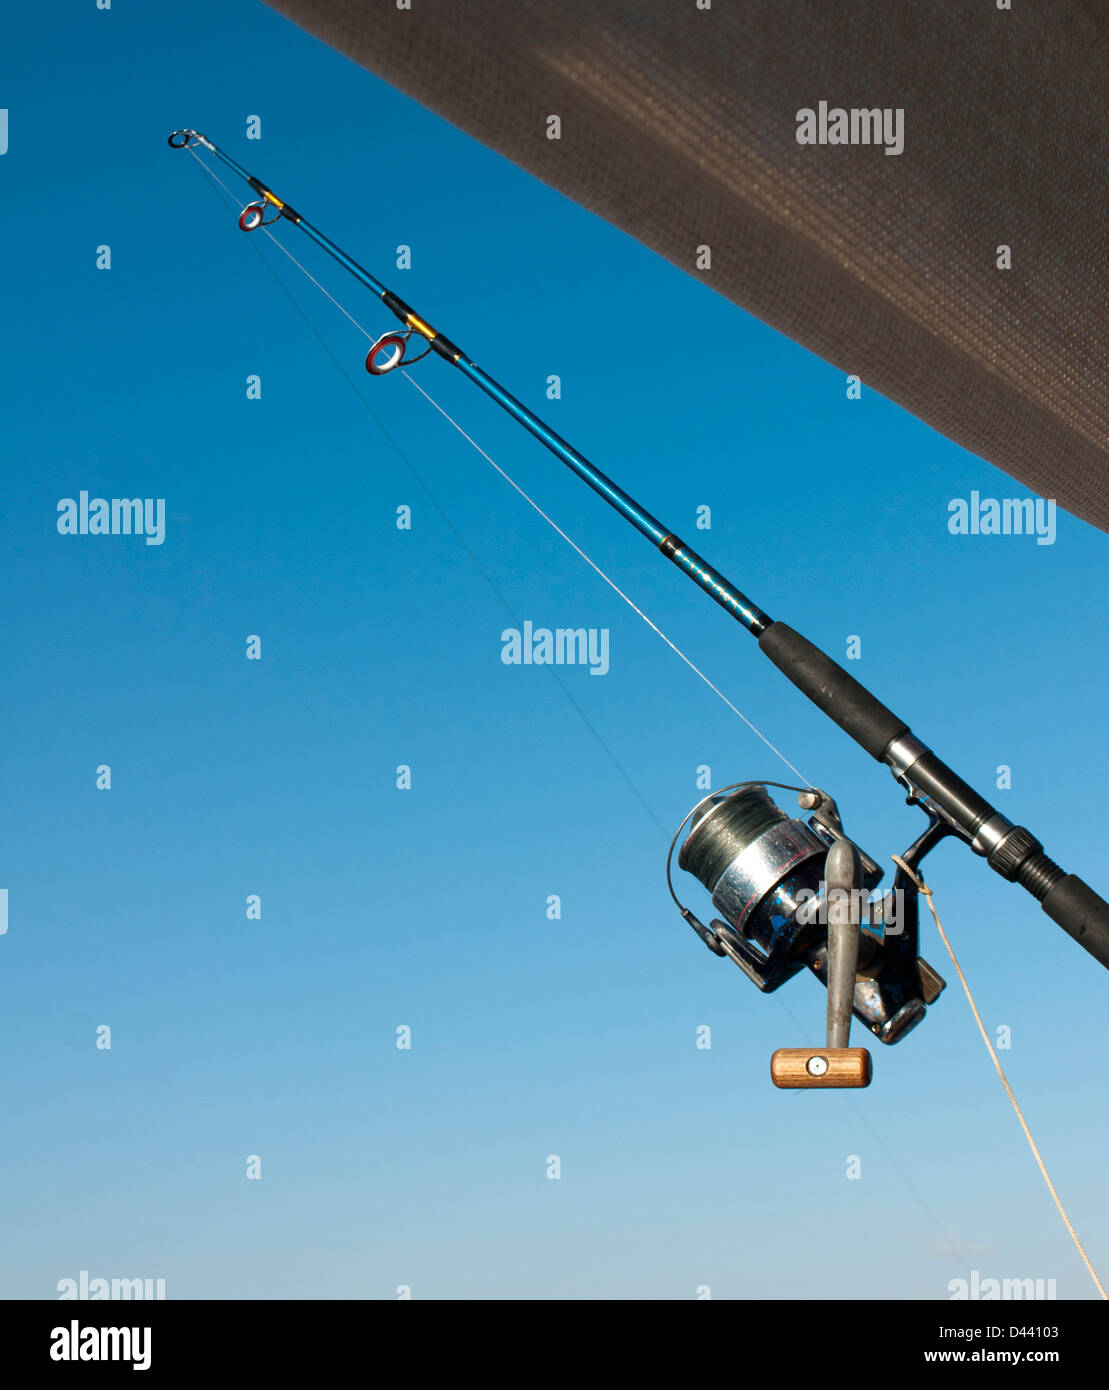 Vecteur de pêche Banque de photographies et d'images à haute résolution -  Alamy